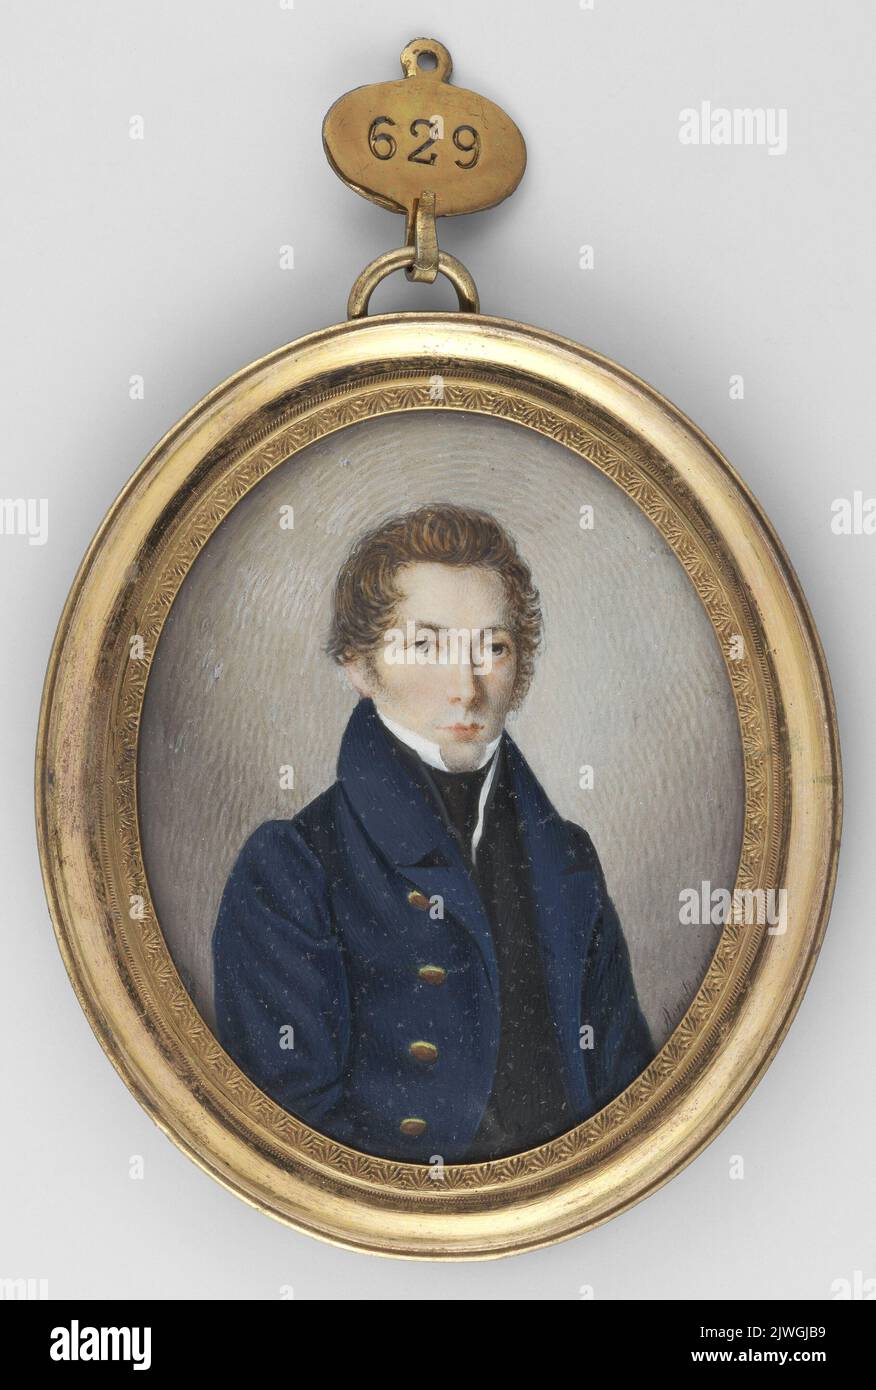 Portret mężczyzny w granatowym surducie ze złotymi guzikami. Anidt (fl. 1829-1850), painter Stock Photo